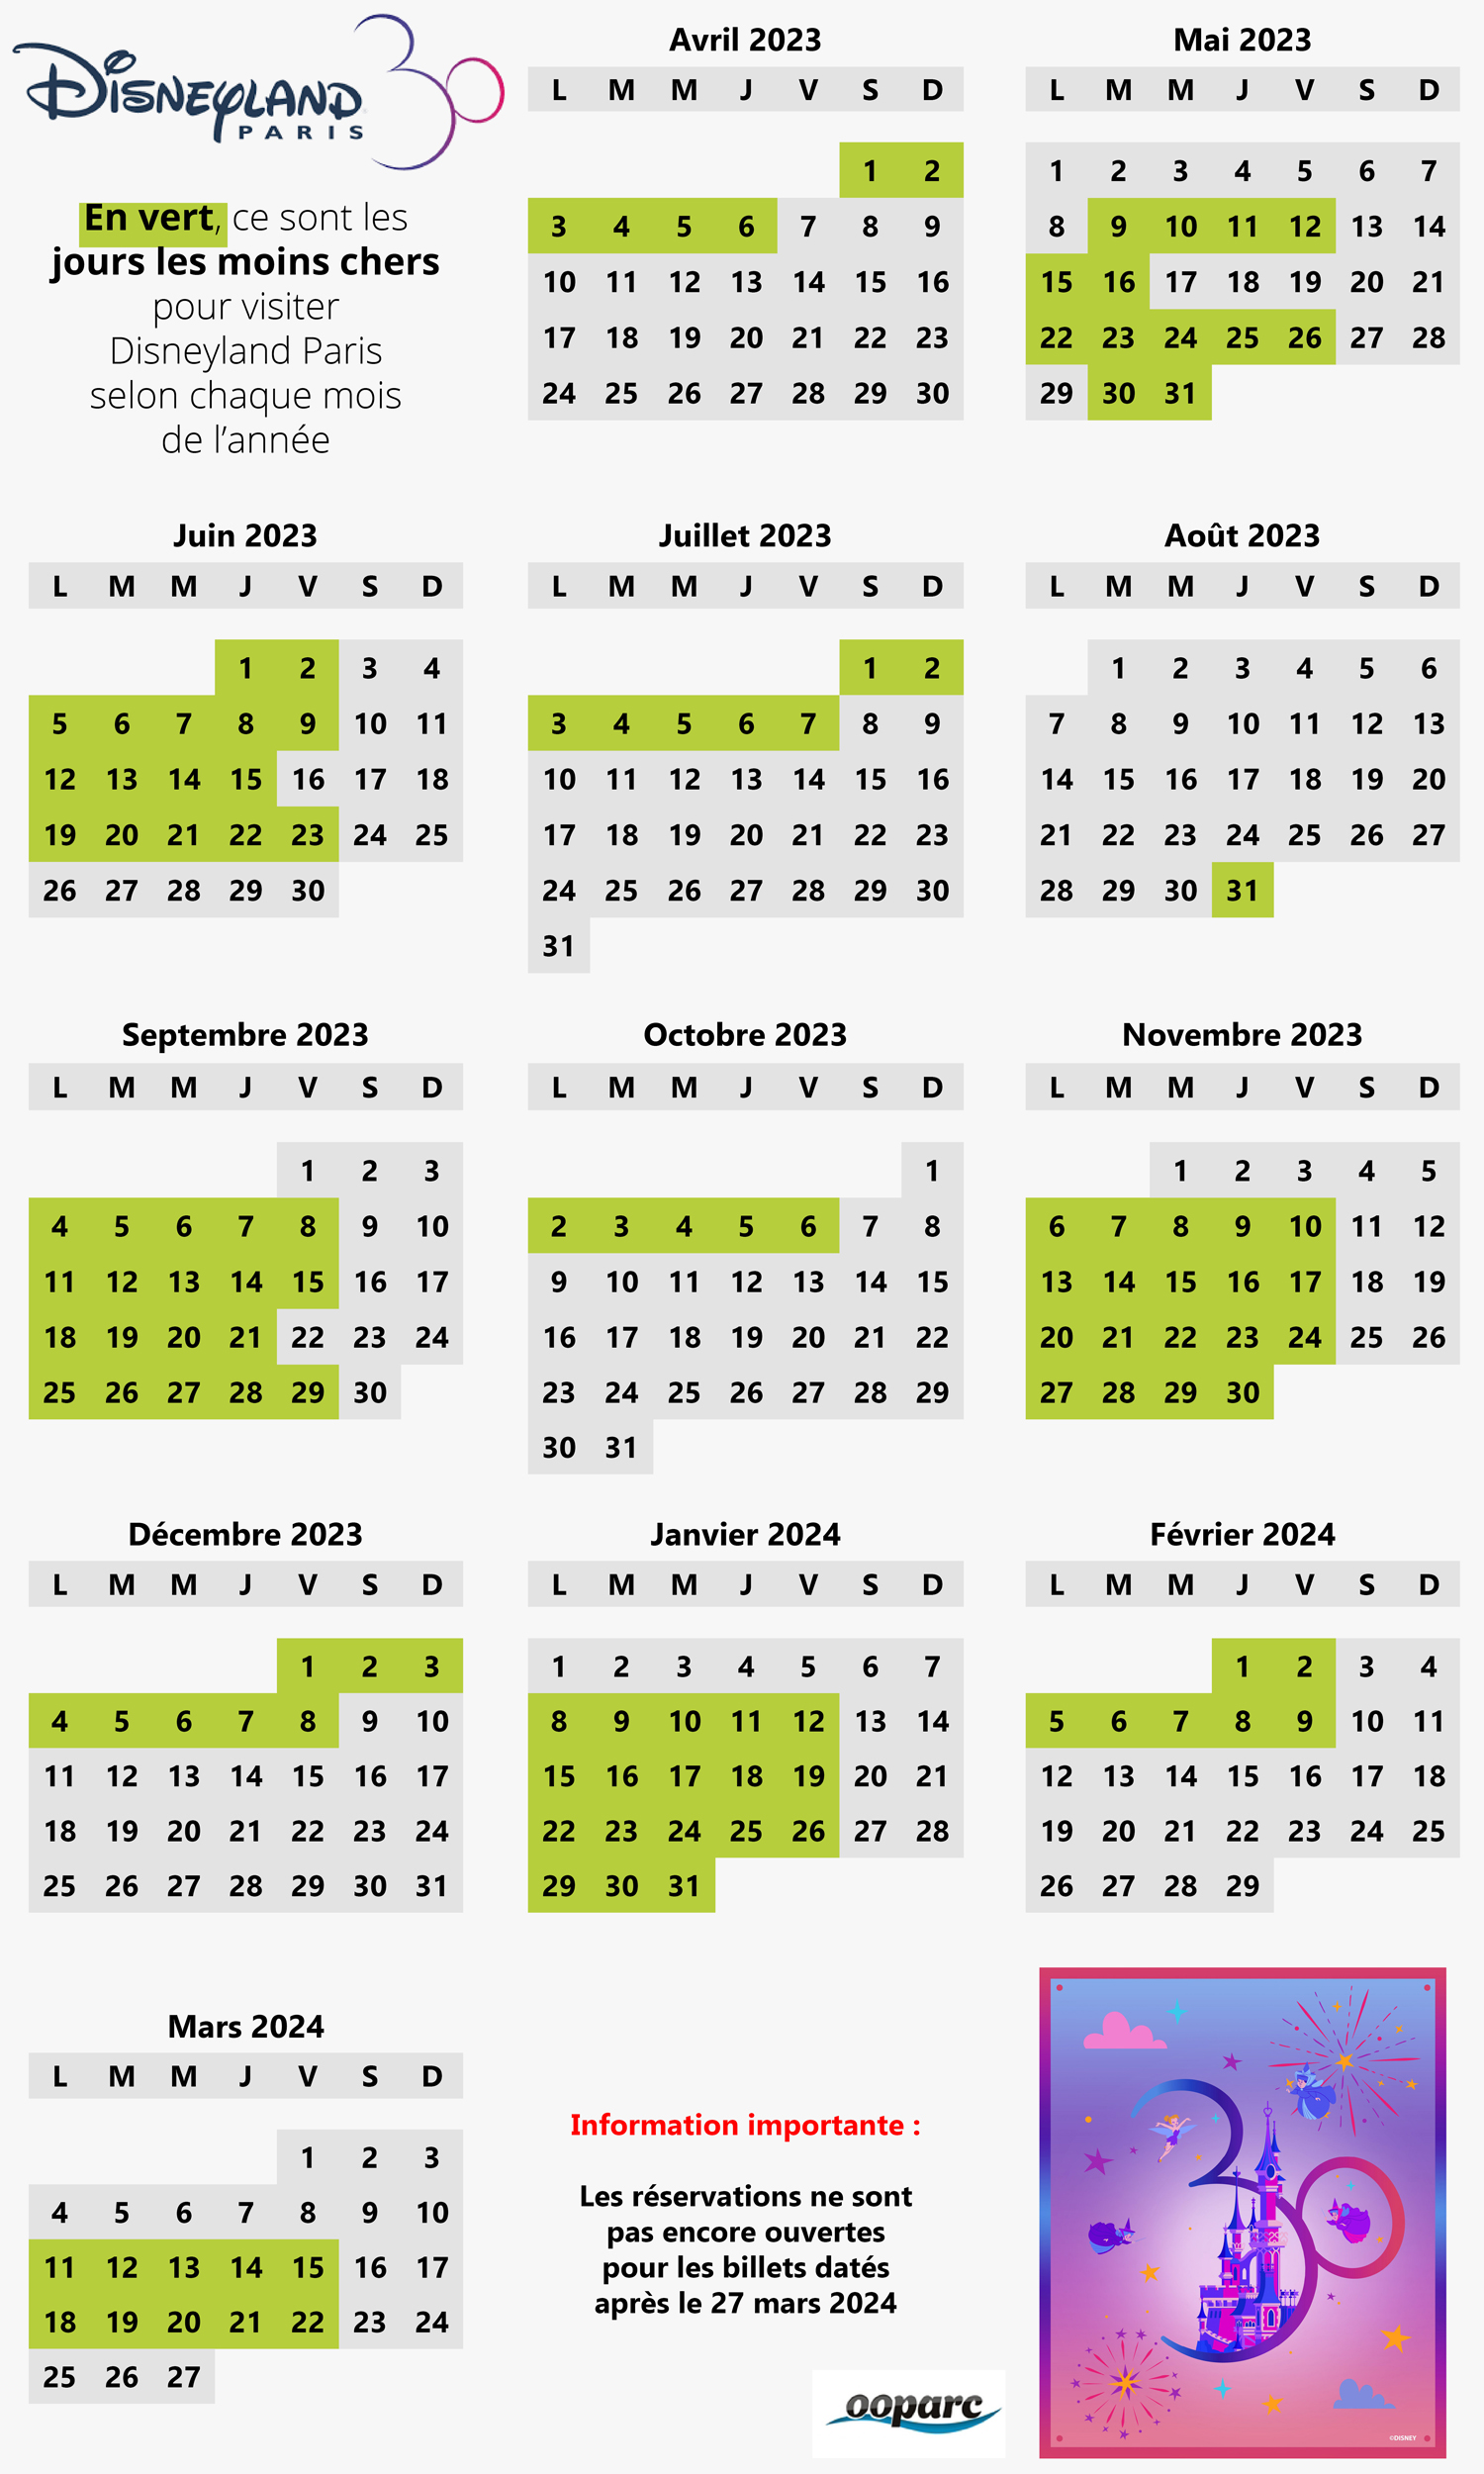 Vous voulez acheter Planner Schedule - Calendrier mensuel